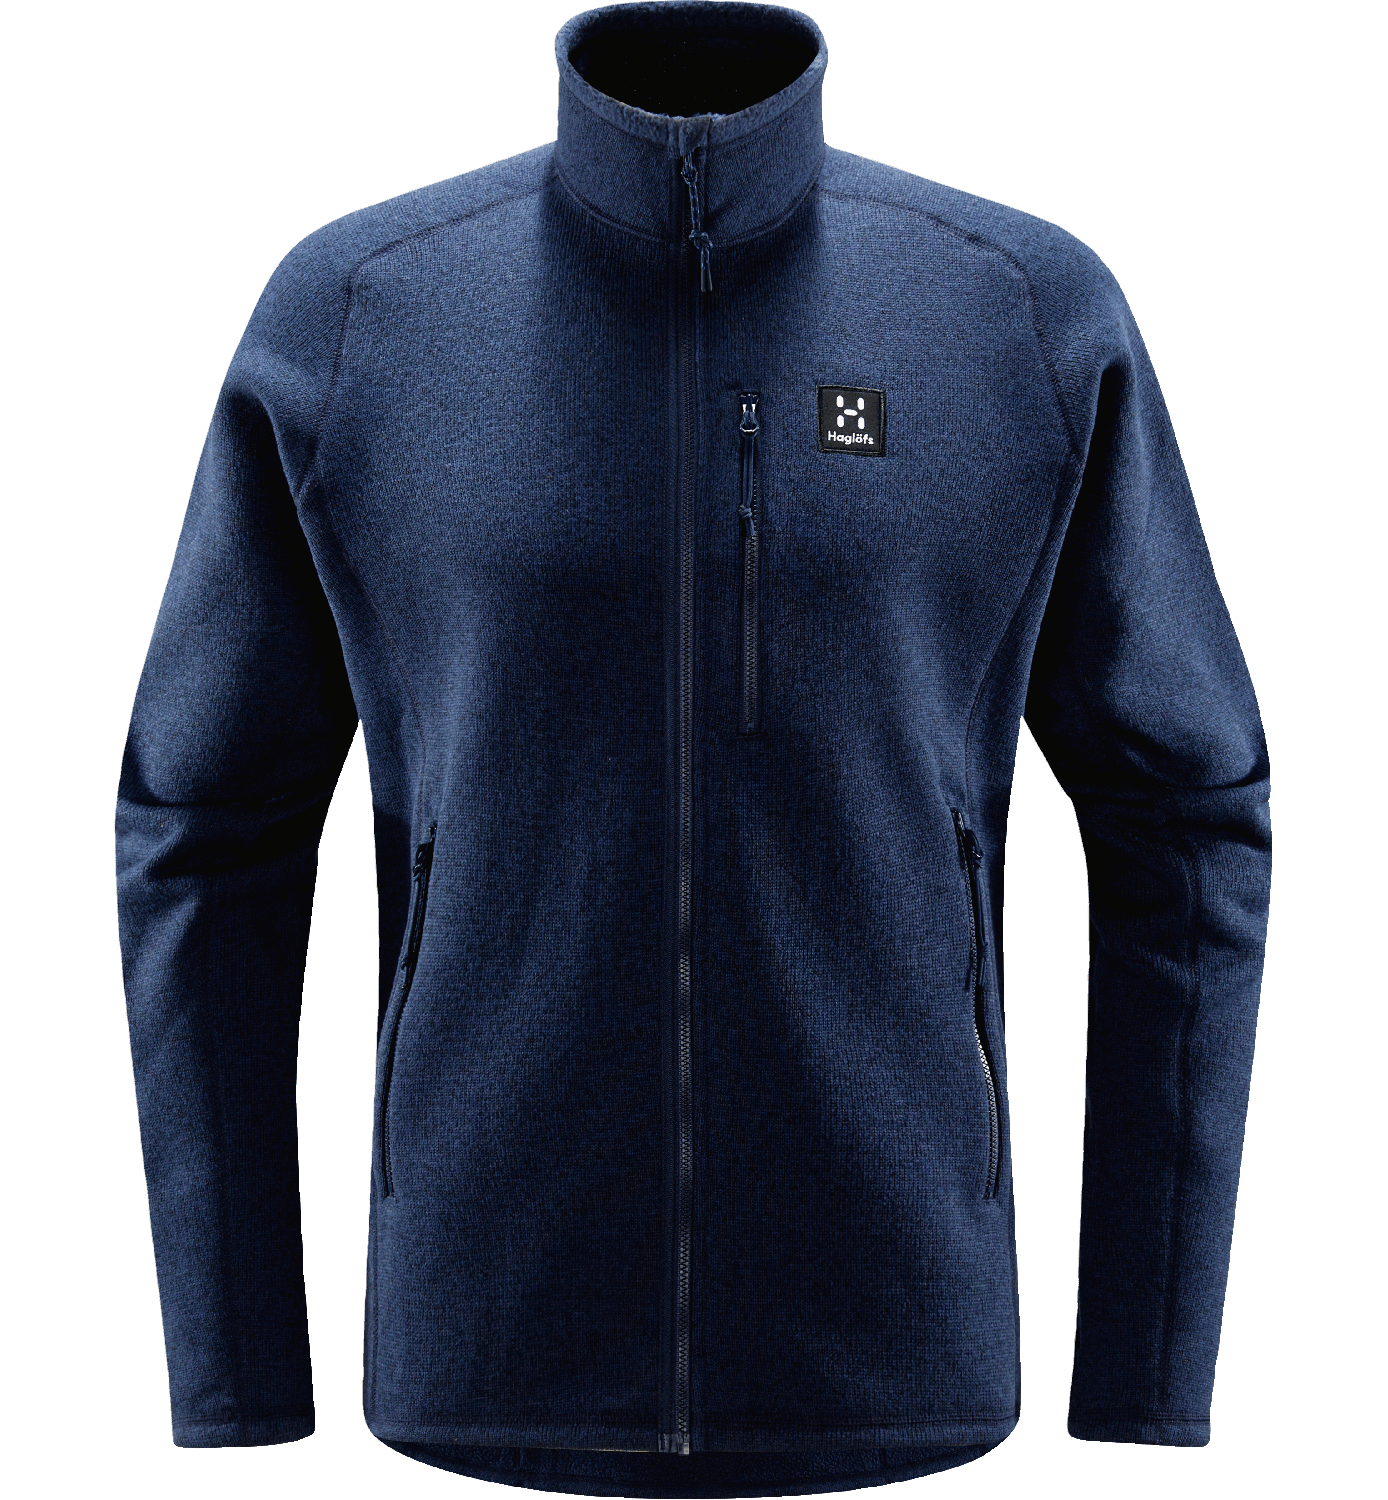 Haglöfs Men's Risberg Jacket Tarn Blue Solid